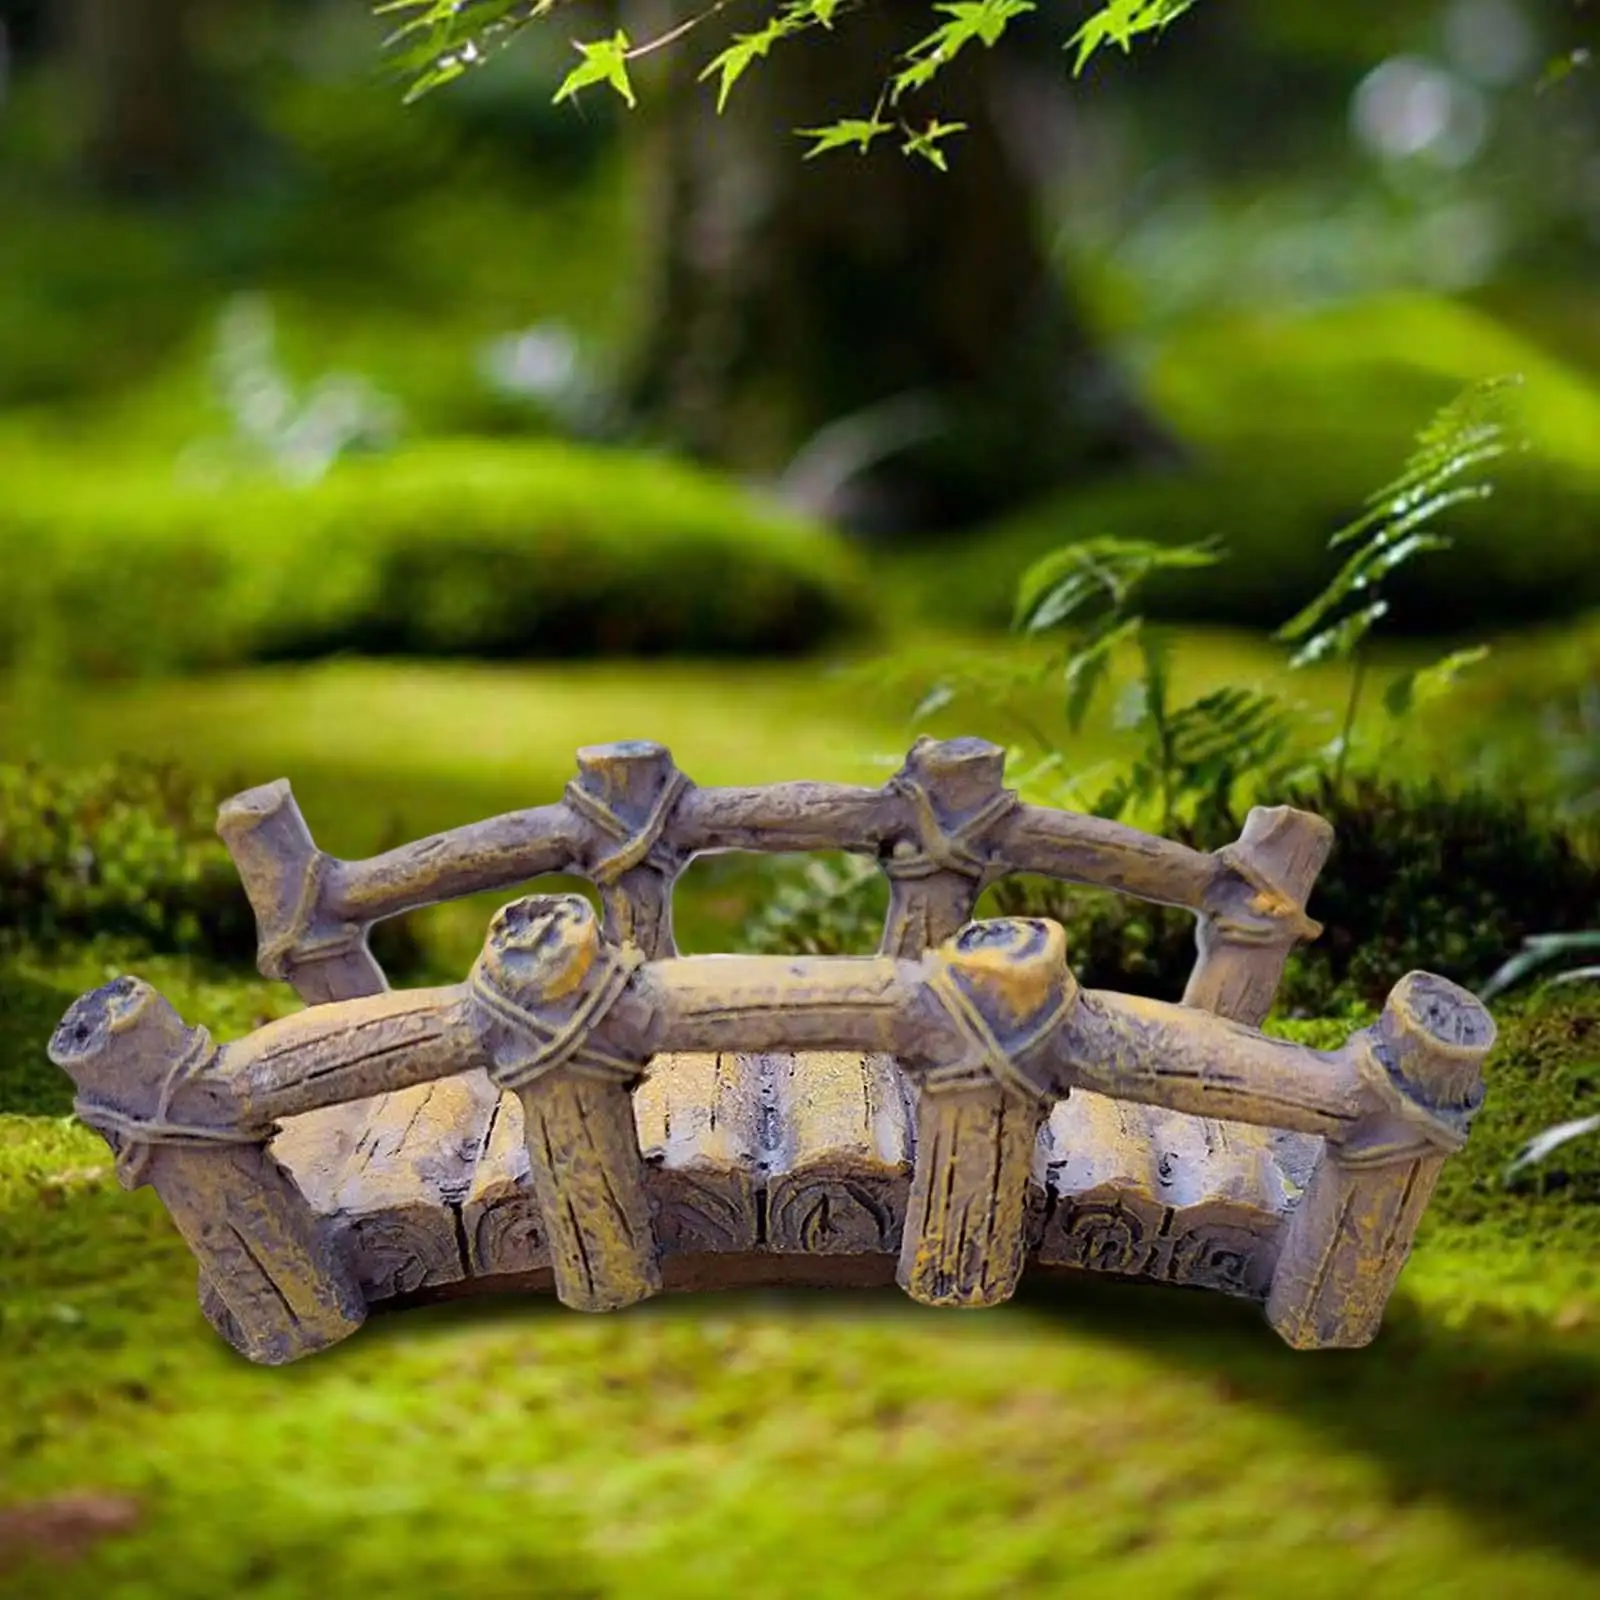 Fairy Garden Bridge Micro Landscape Accessories Statue Fish Tank Ornament Miniature Arch Bridge for Desktop Lawn Potted Decor